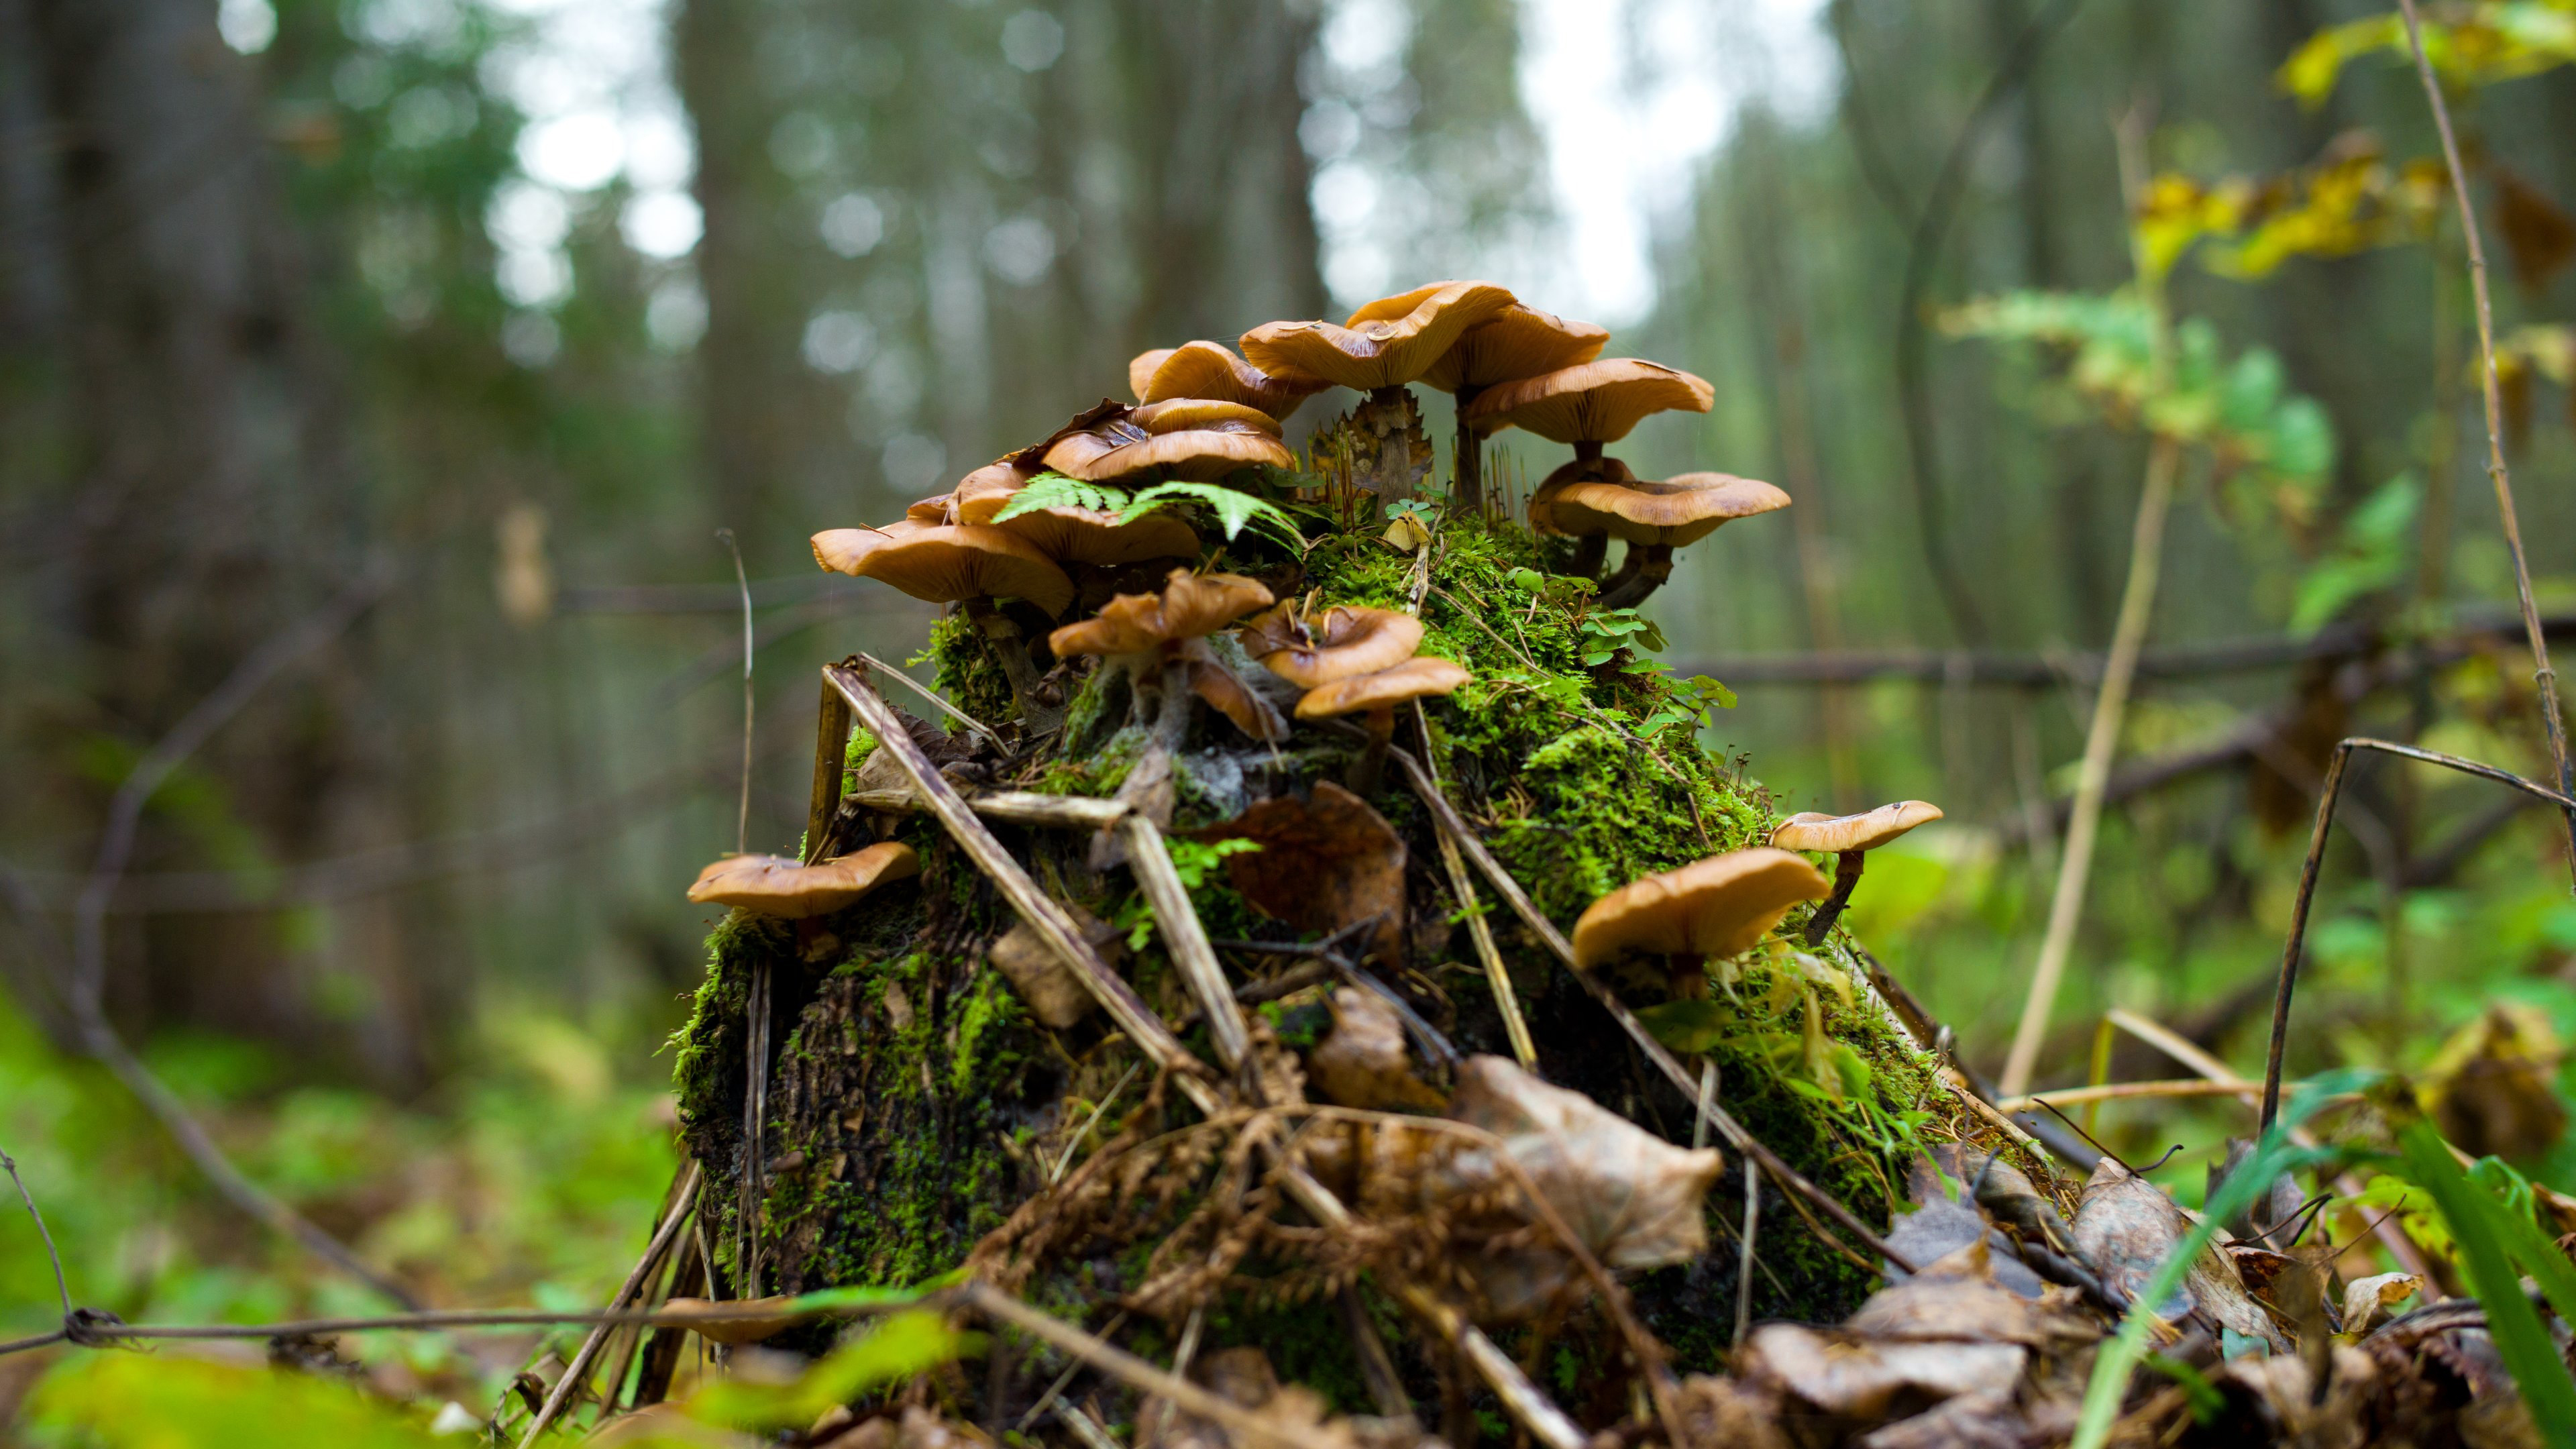 تصویر زمینه قارچ جنگلی در طبیعت با کیفیت خفن اولترا اچ دی